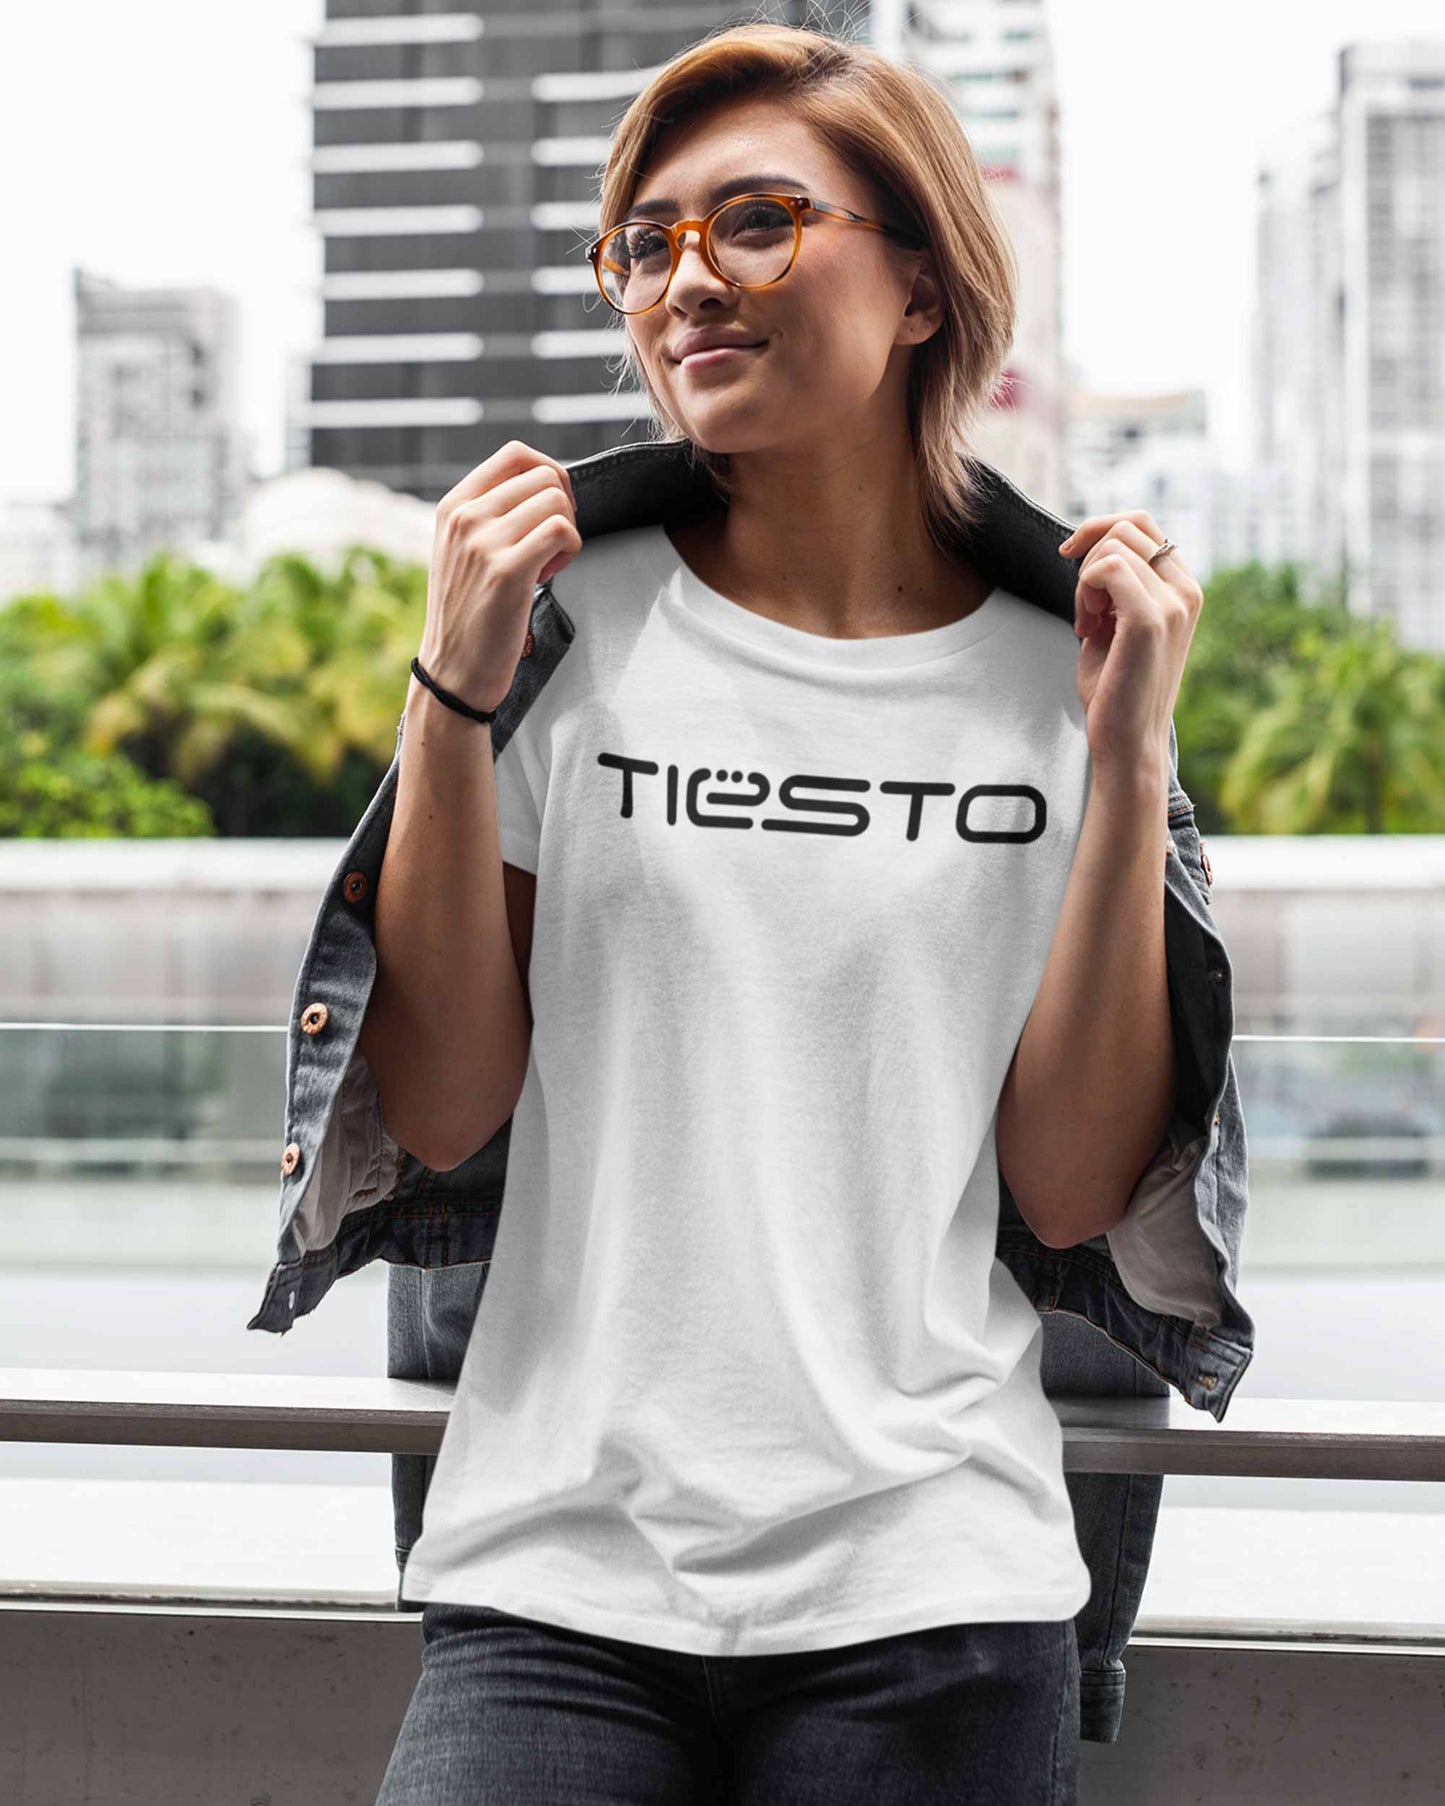 Tiesto - Digital Graphics Basic T-shirt White